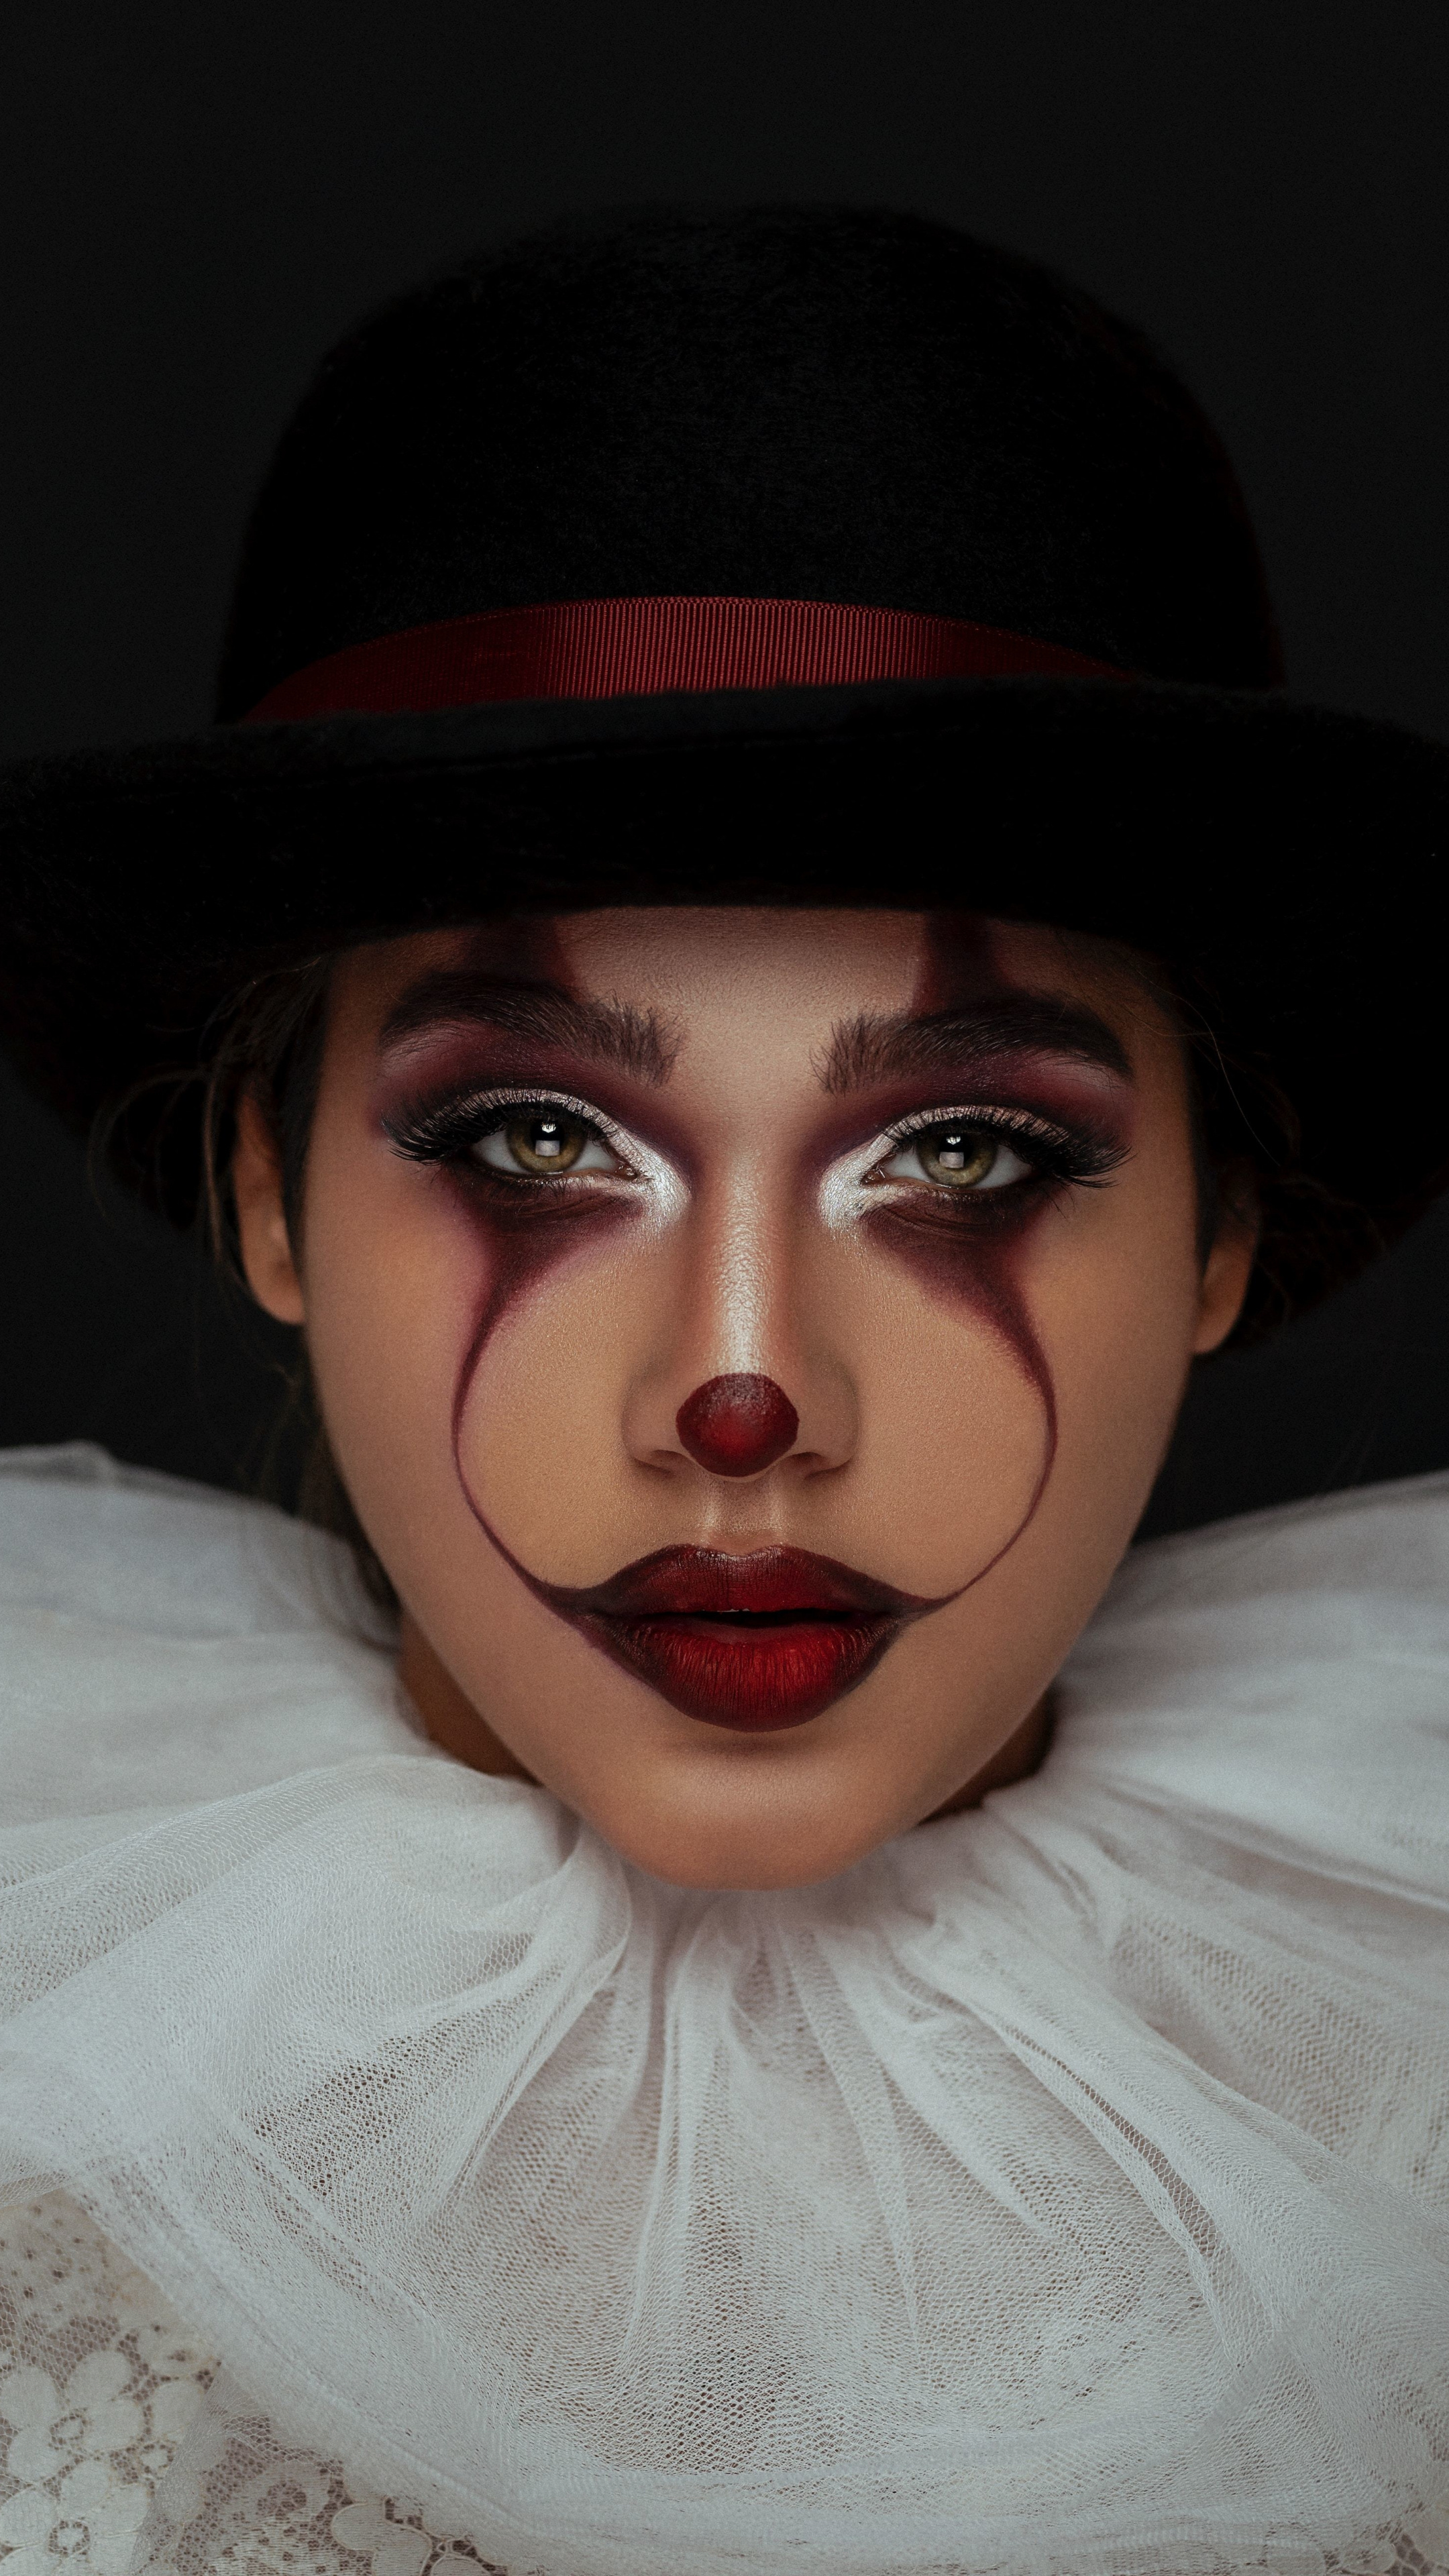 Joker makeup, Woman model, Xperia Z5 Premium, 2160x3840 4K Handy